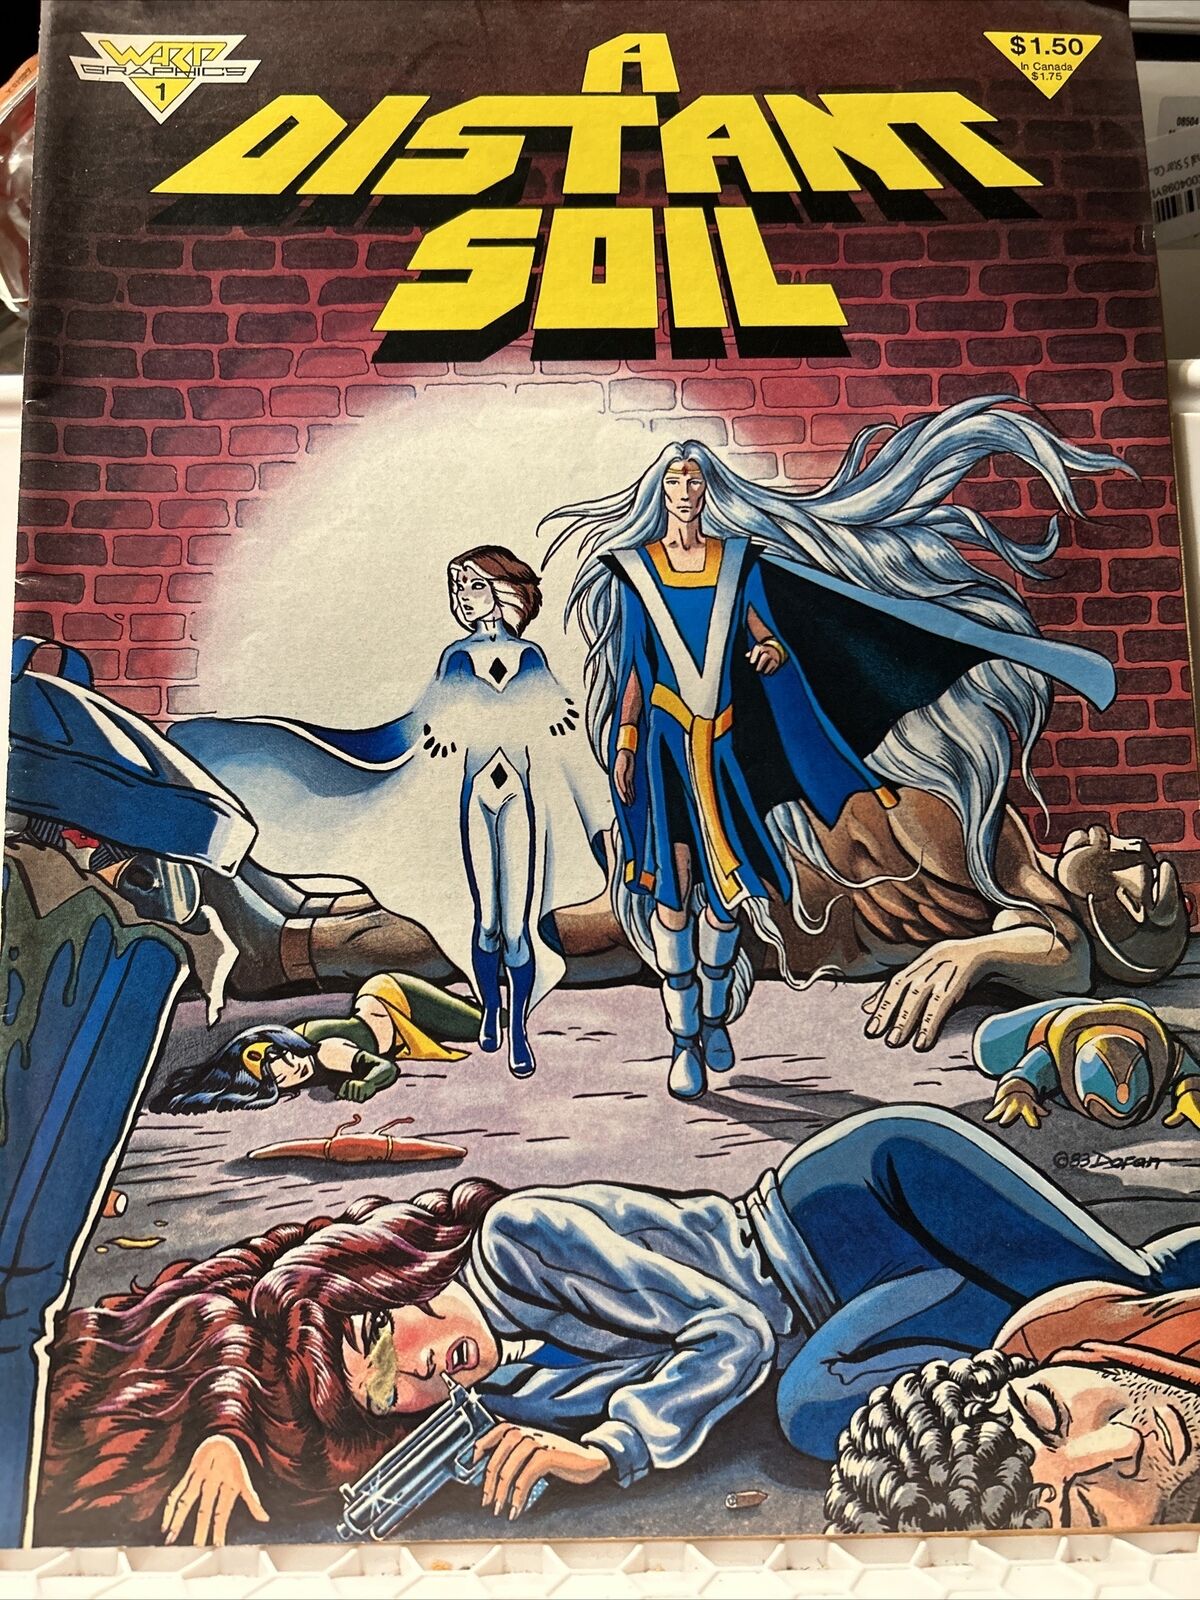 A DISTANT SOIL #1 (Warp Graphics Dec 1983) Colleen Doran; Original Version